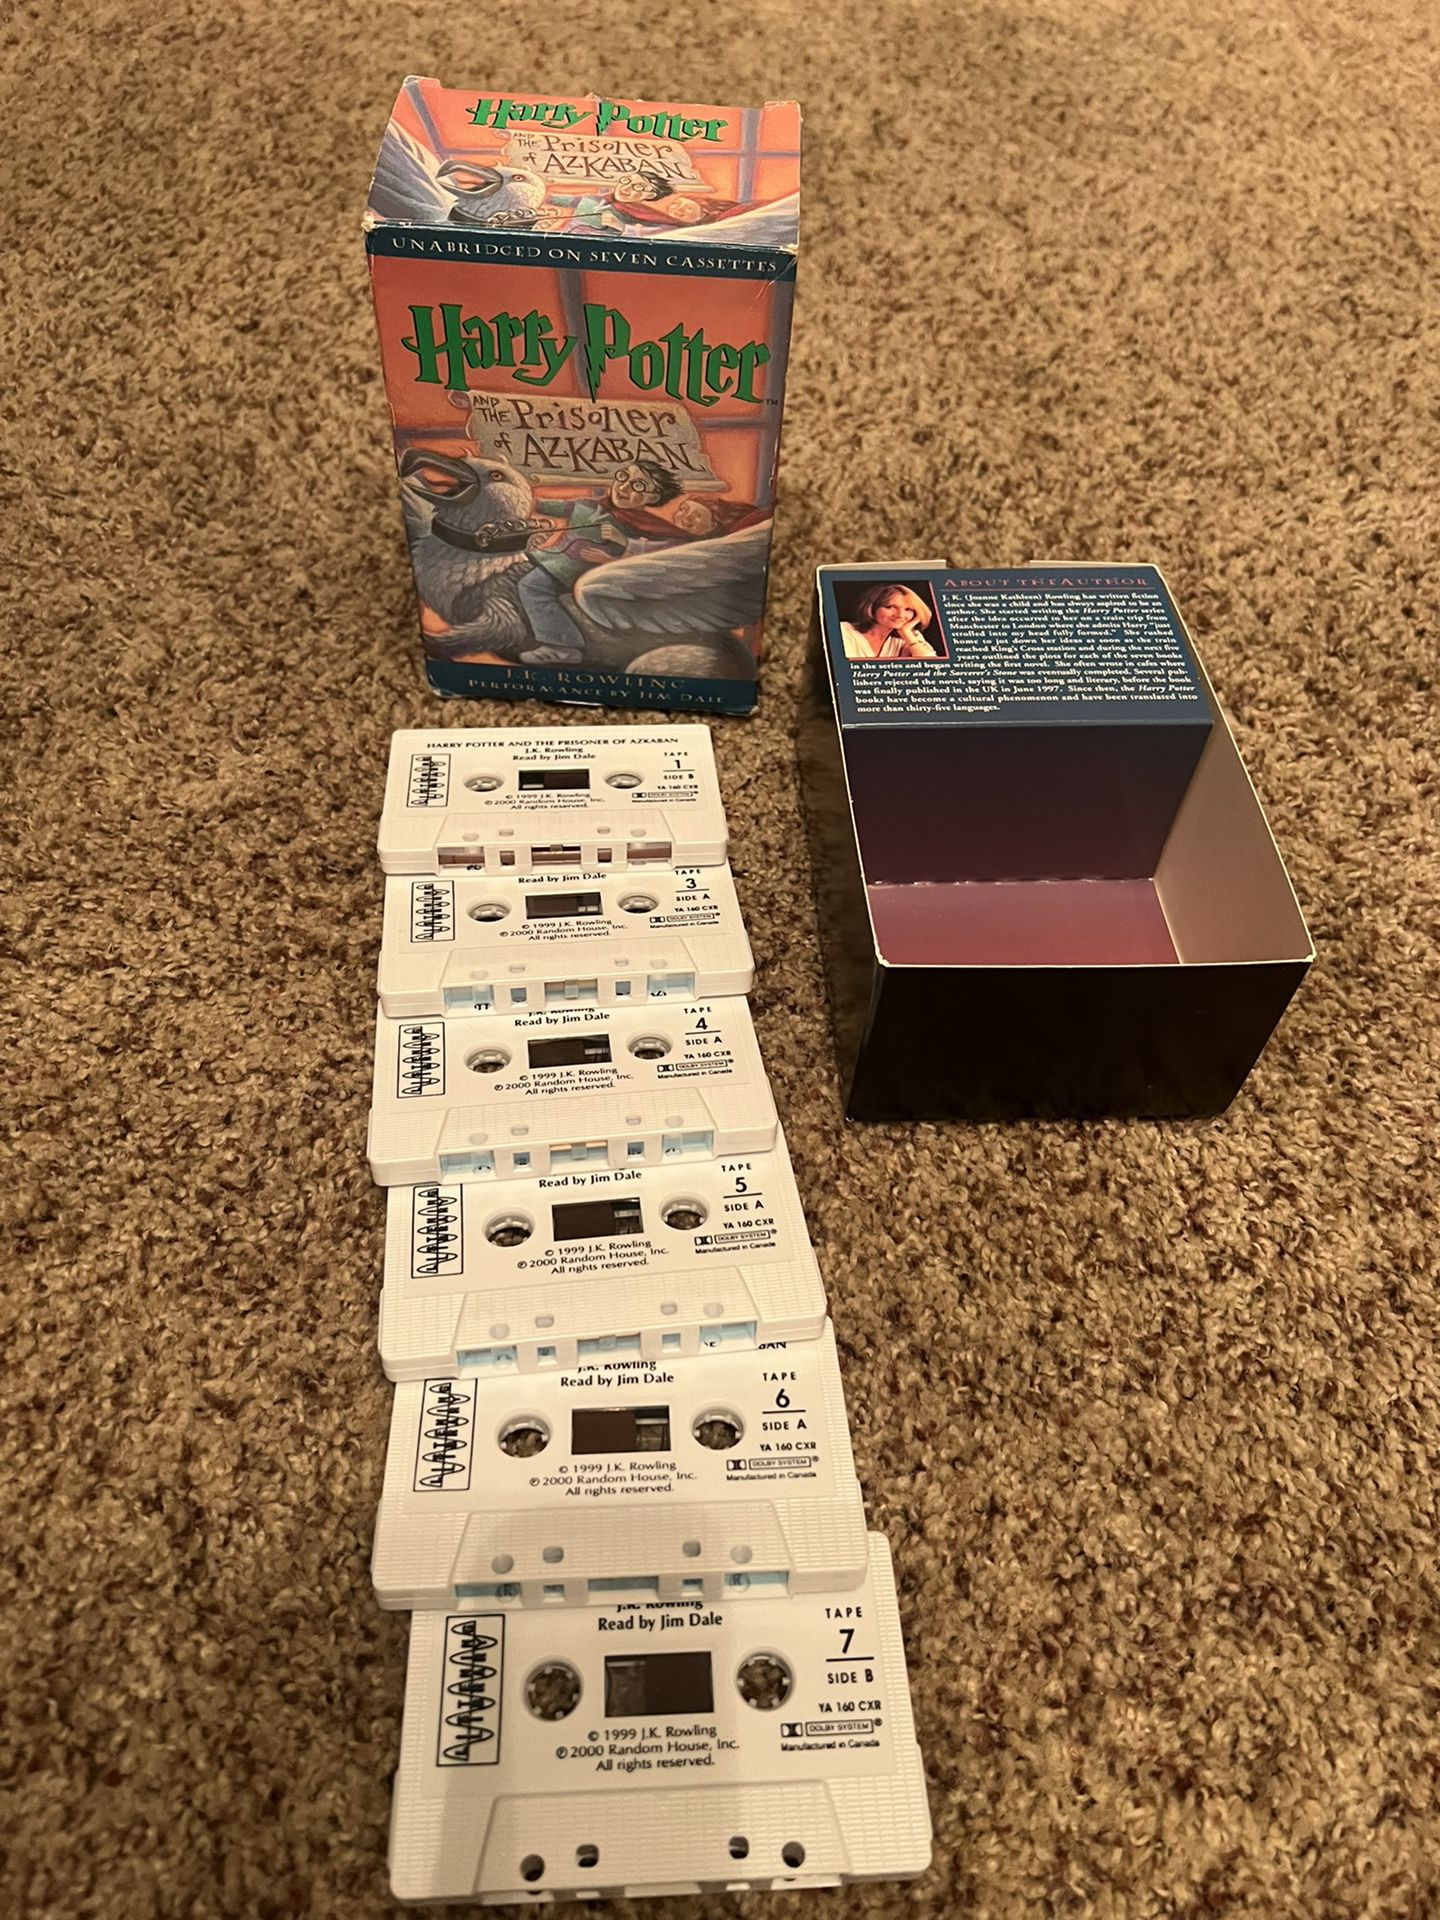 Harry Potter Audio Cassette Vintage 6 cassettes 